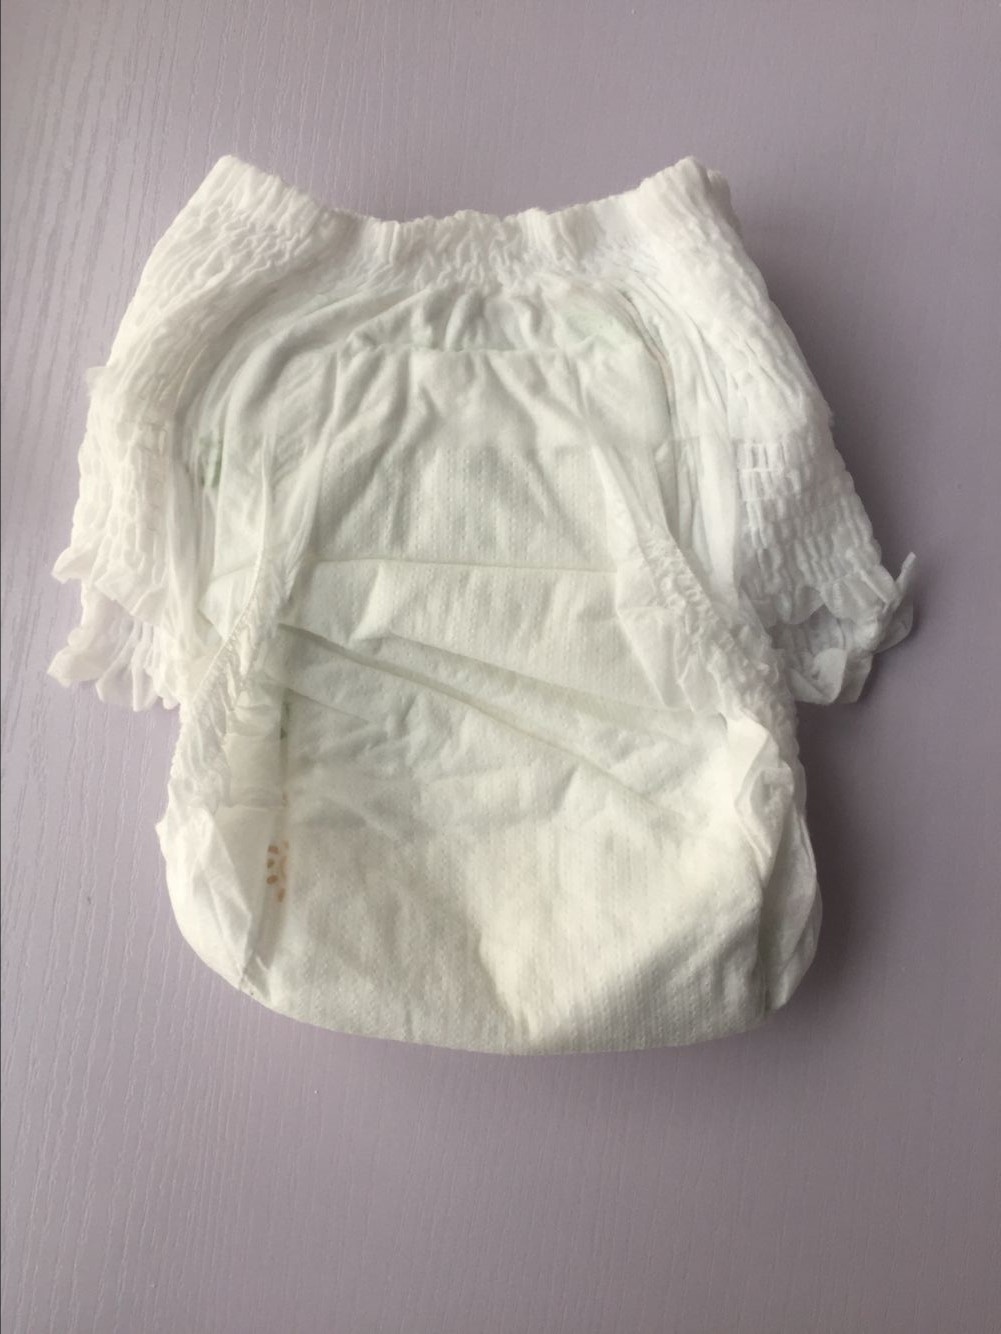 Baby Pants/Pull-Ups Diaper